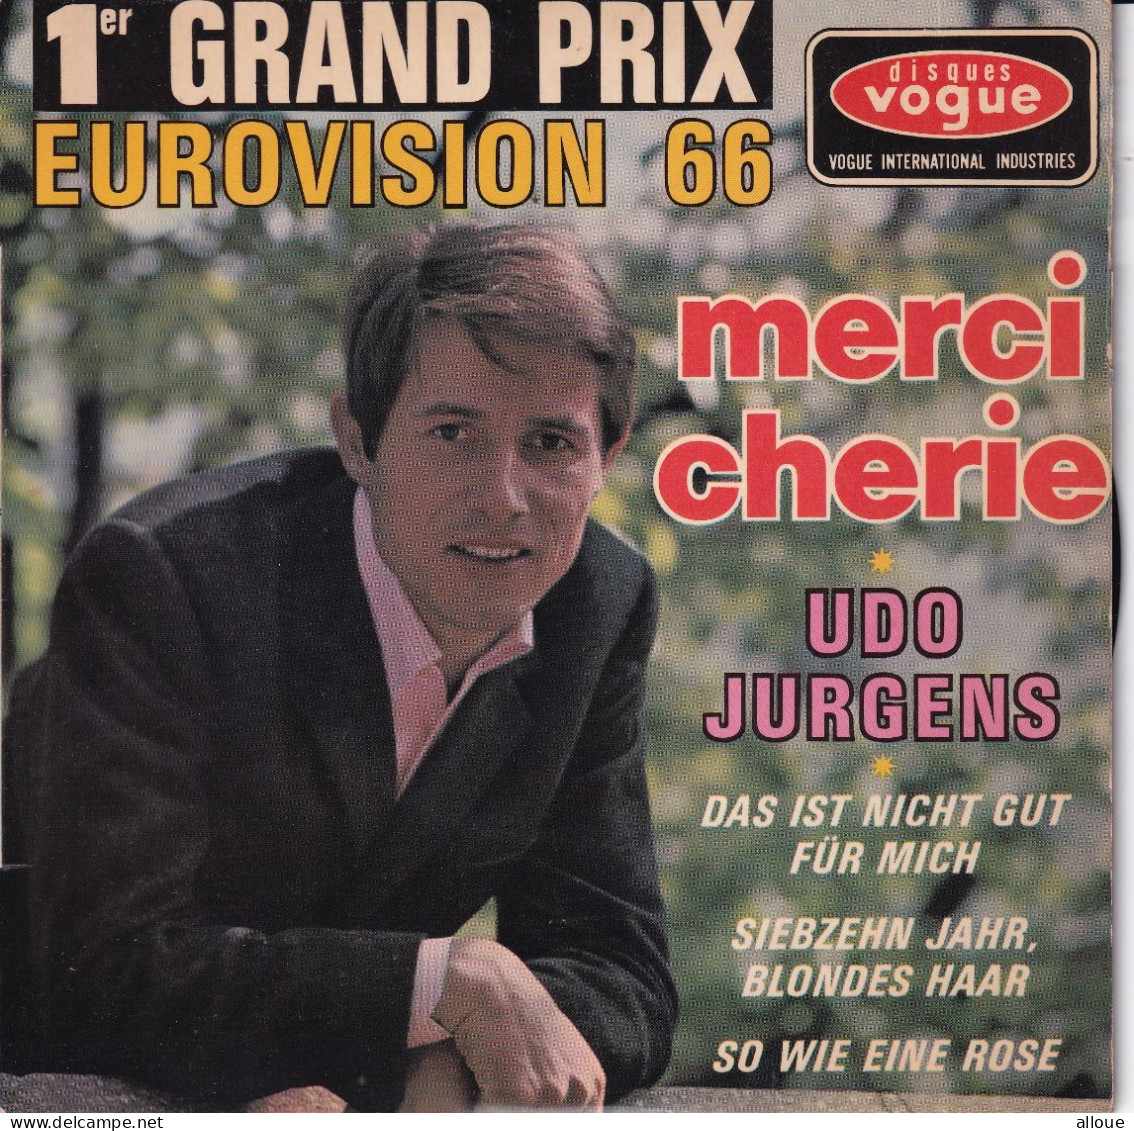 UDO JURGENS - FR EP EUROVISION 1966  - MERCI CHERIE + 3 - Autres - Musique Allemande